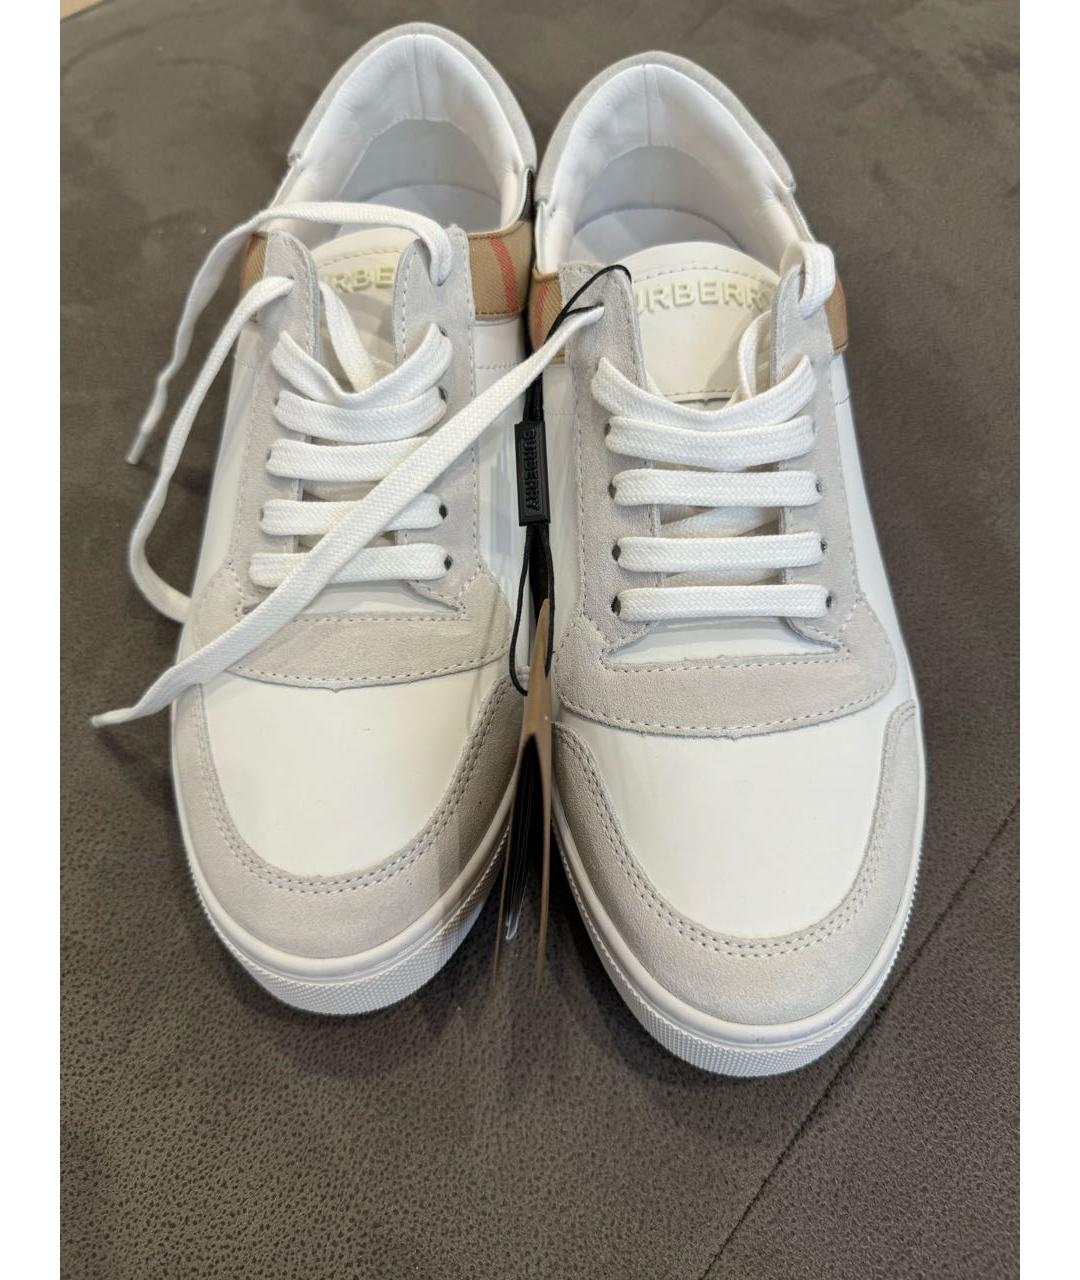 BURBERRY Белые кожаные низкие кроссовки / кеды, фото 3